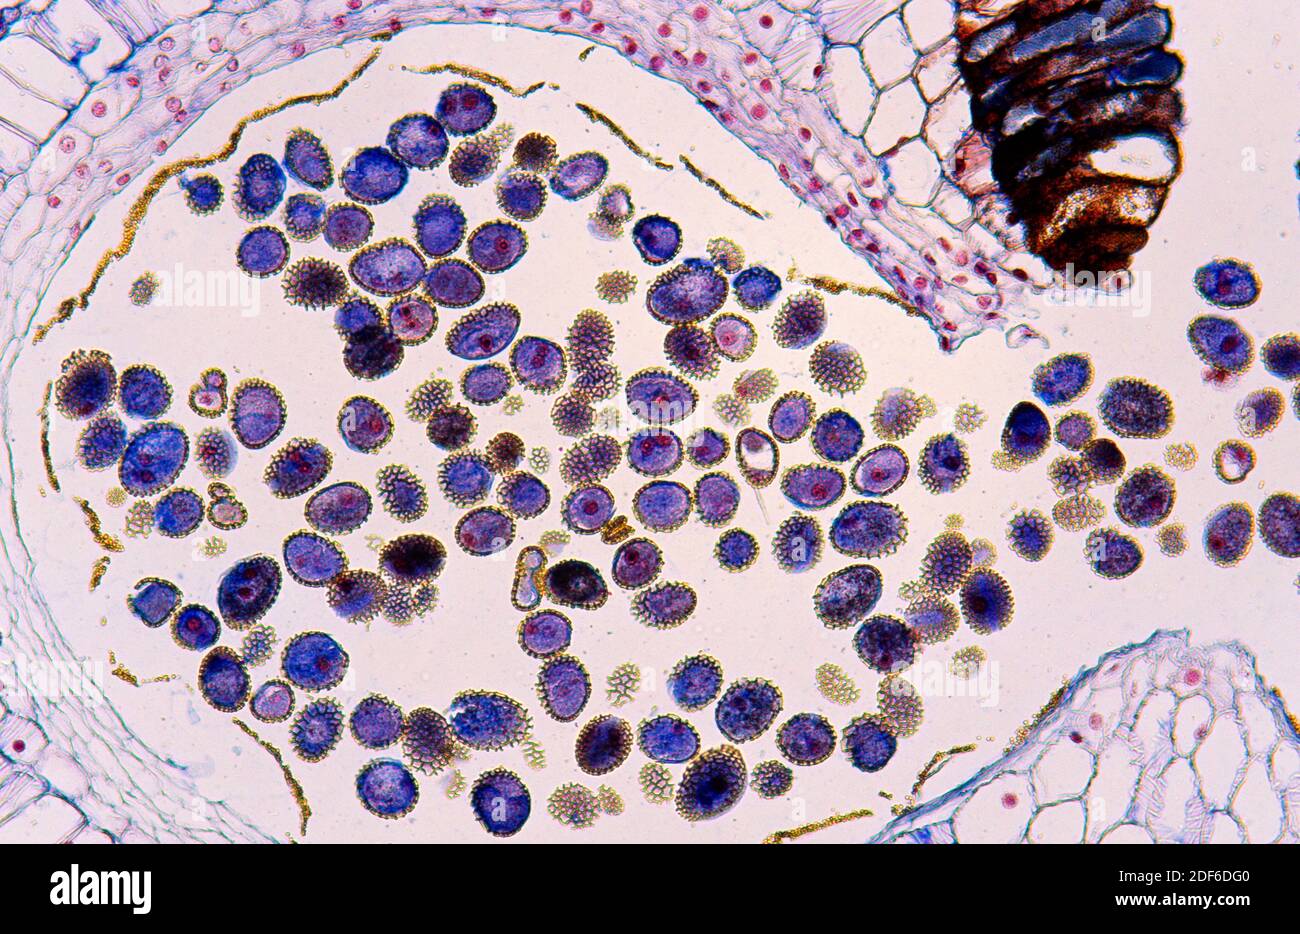 Lilienanother mit Pollen. Optisches Mikroskop, Vergrößerung X100  Stockfotografie - Alamy